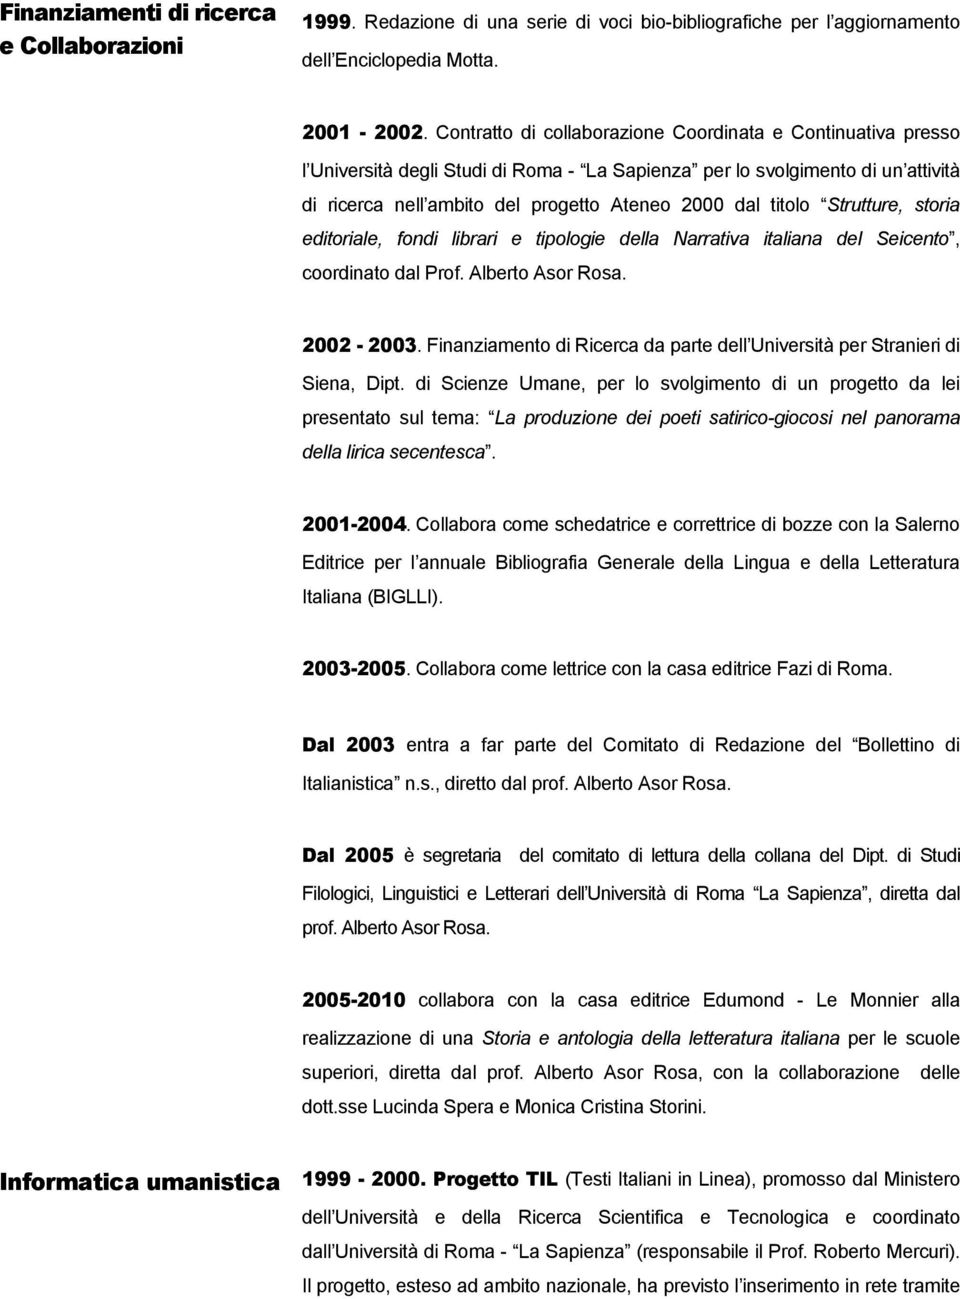 titolo Strutture, storia editoriale, fondi librari e tipologie della Narrativa italiana del Seicento, coordinato dal Prof. Alberto Asor Rosa. 2002-2003.